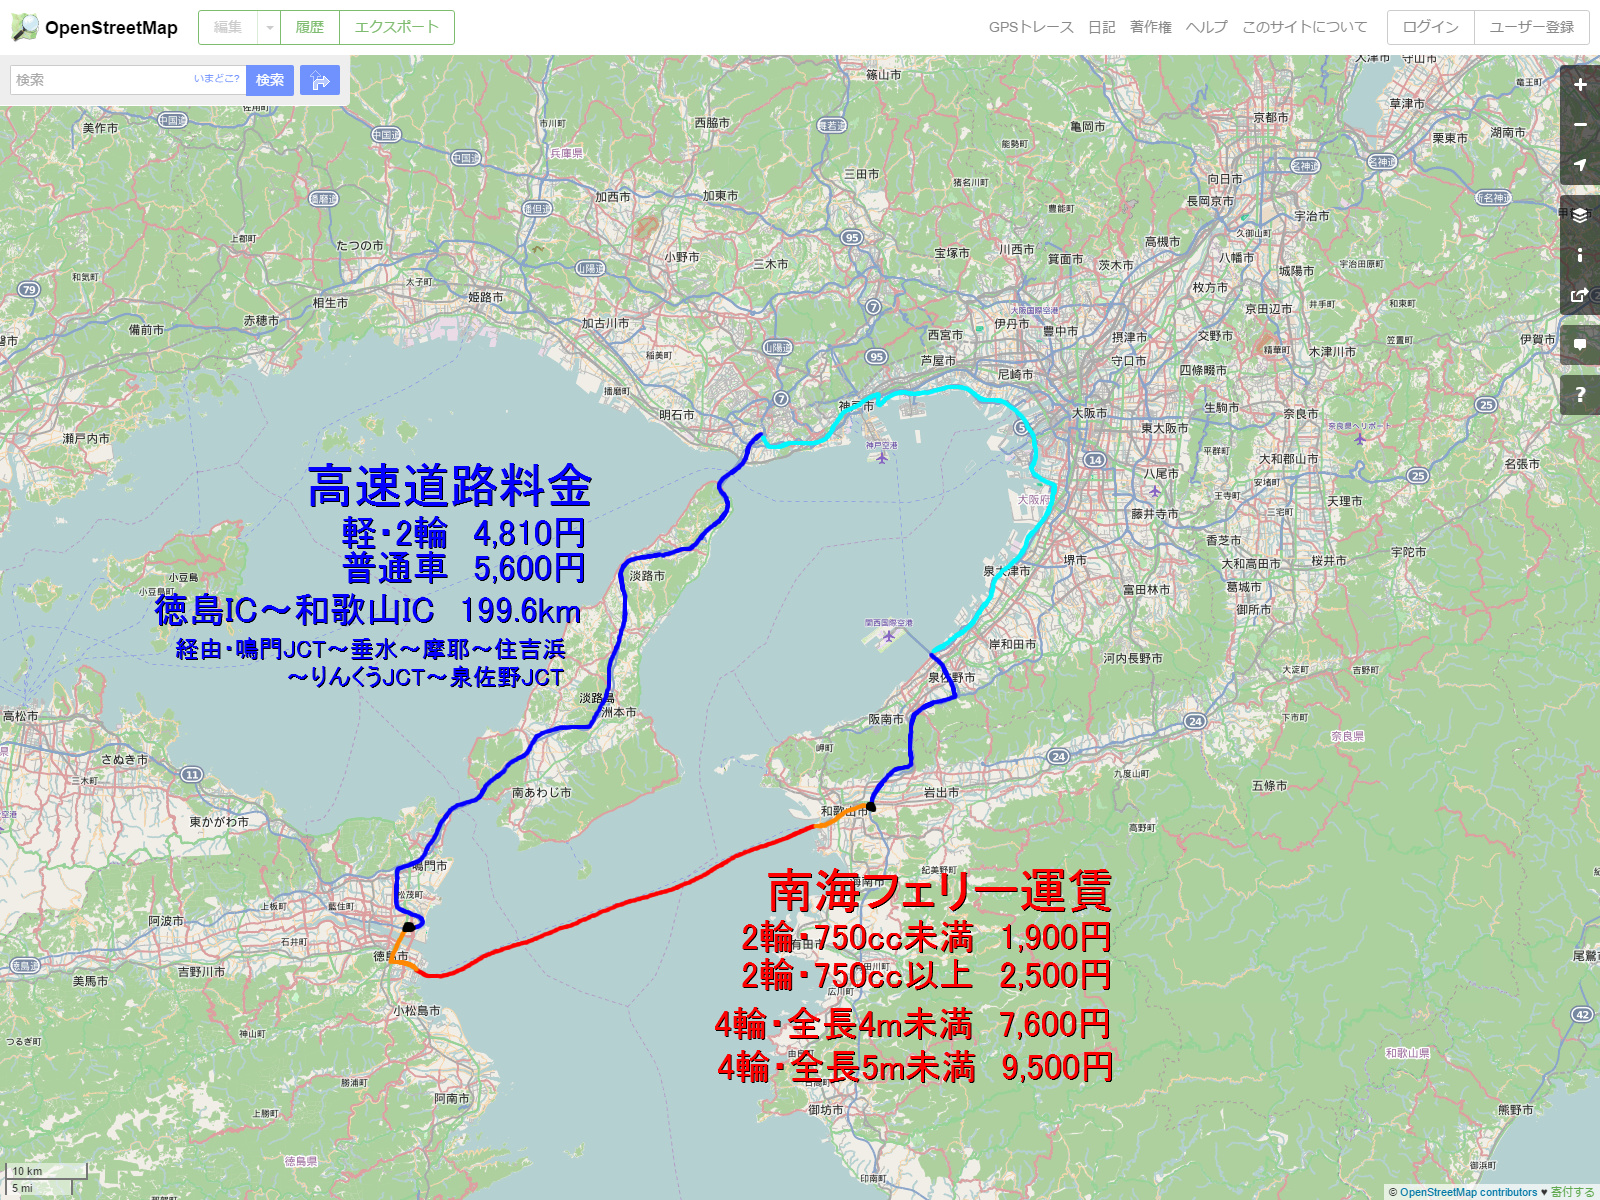 Rcp193の道路についてのブログ 道路以外もあります 徳島 和歌山 南海フェリーが良いか 高速道路がいいか